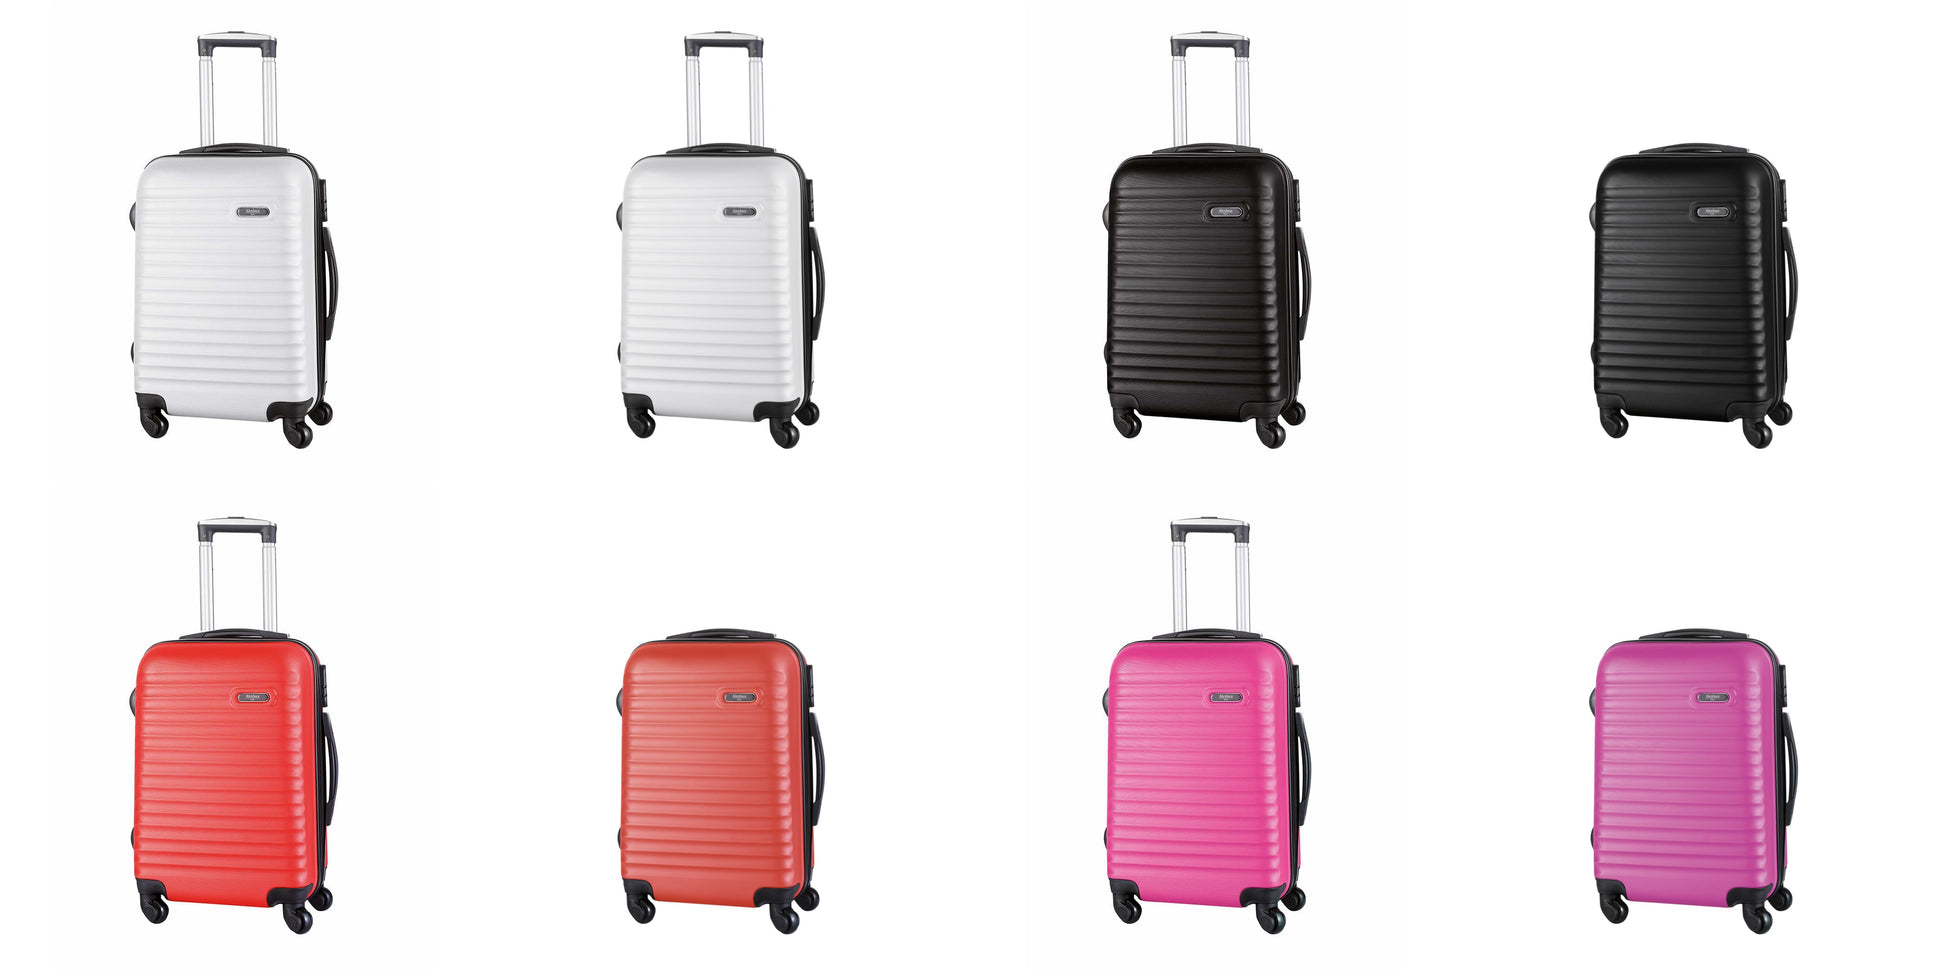 valise coloris multiples avecIntérieur doublé avec le logo de la marque et équipé de sangles élastiques de maintien pour organiser efficacement les affaires.